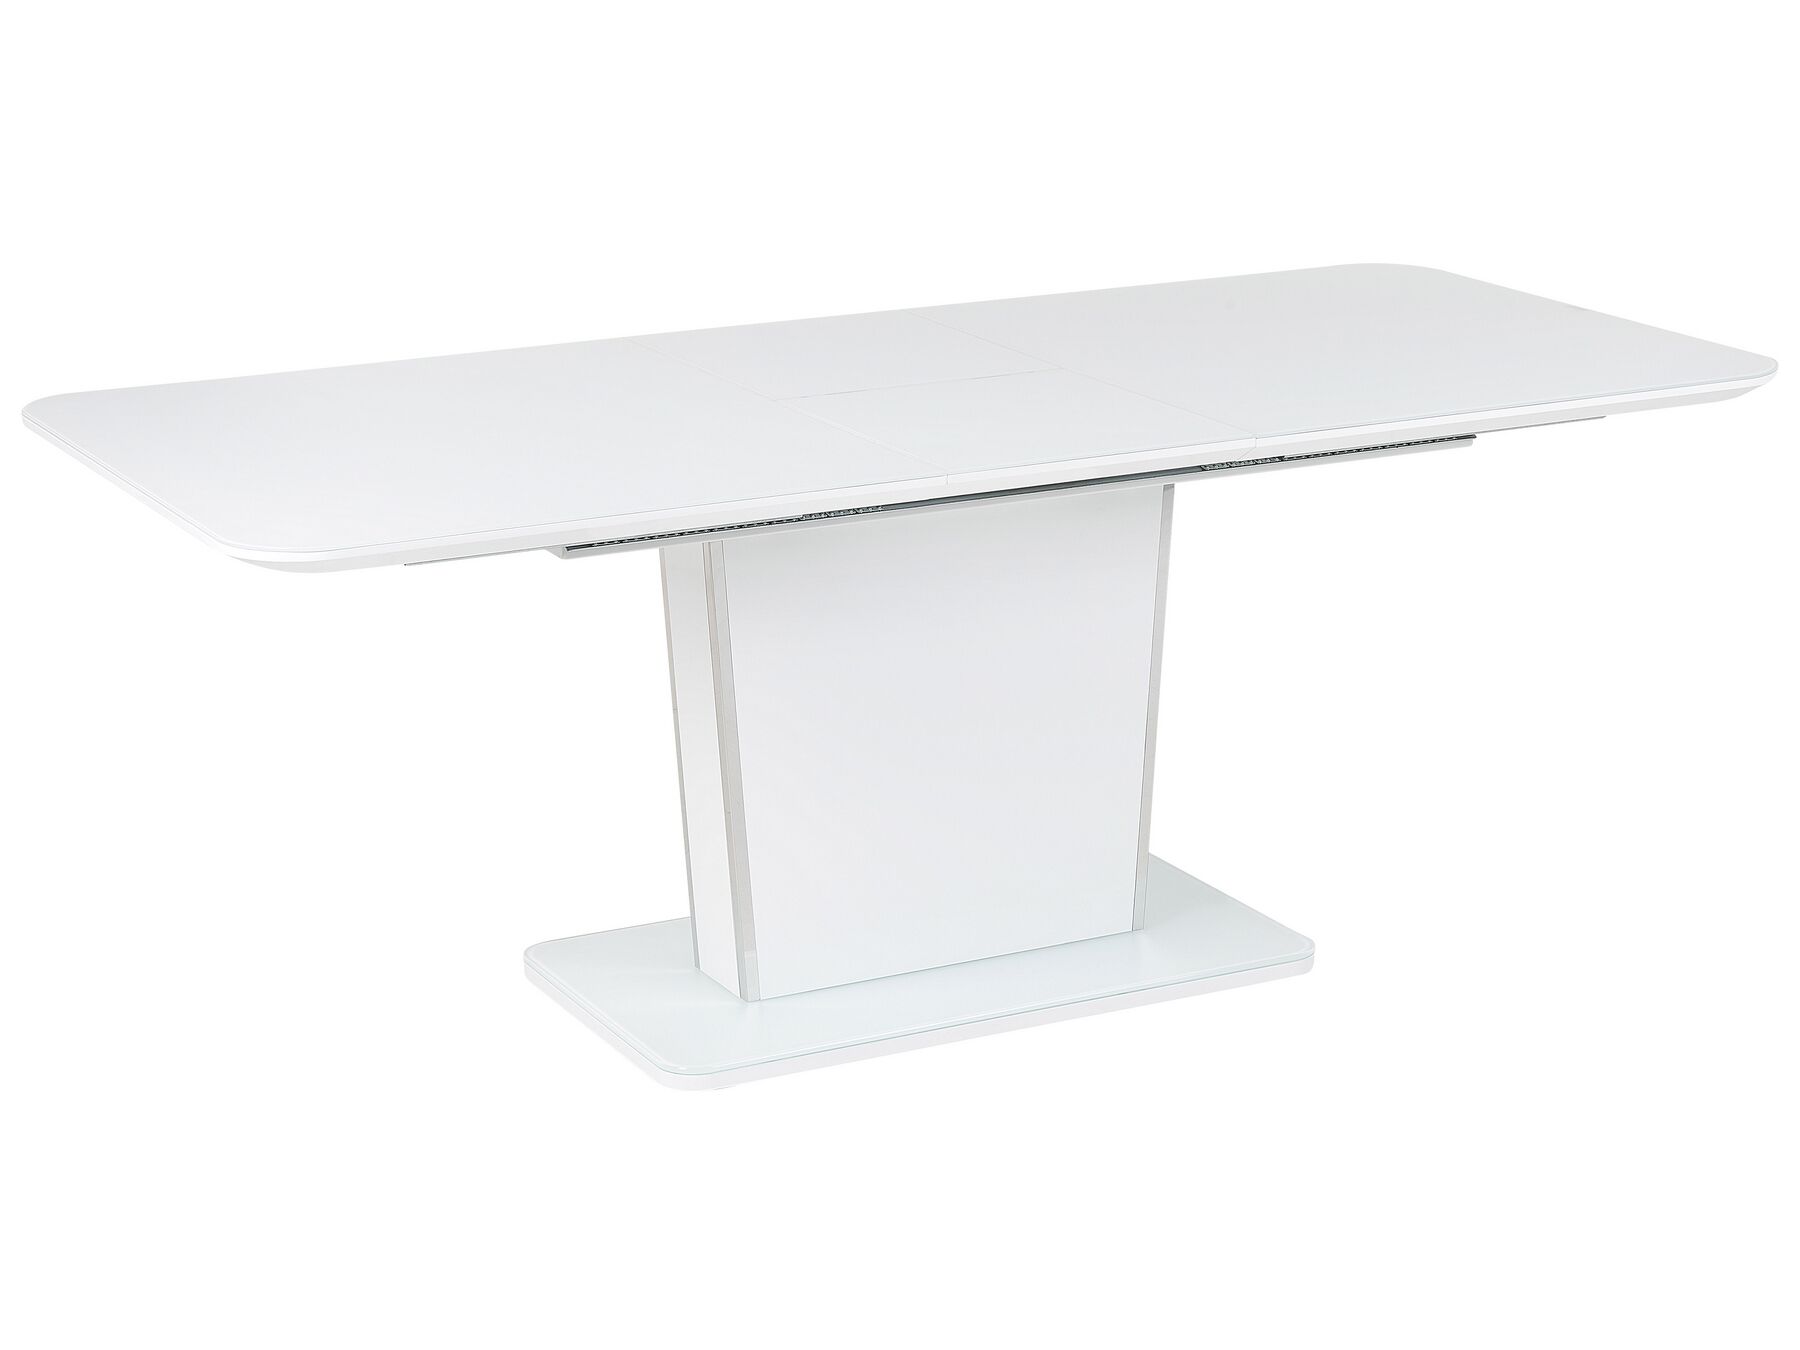 Mesa de comedor extensible blanco/plateado 160/200 x 90 cm SUNDS_821111